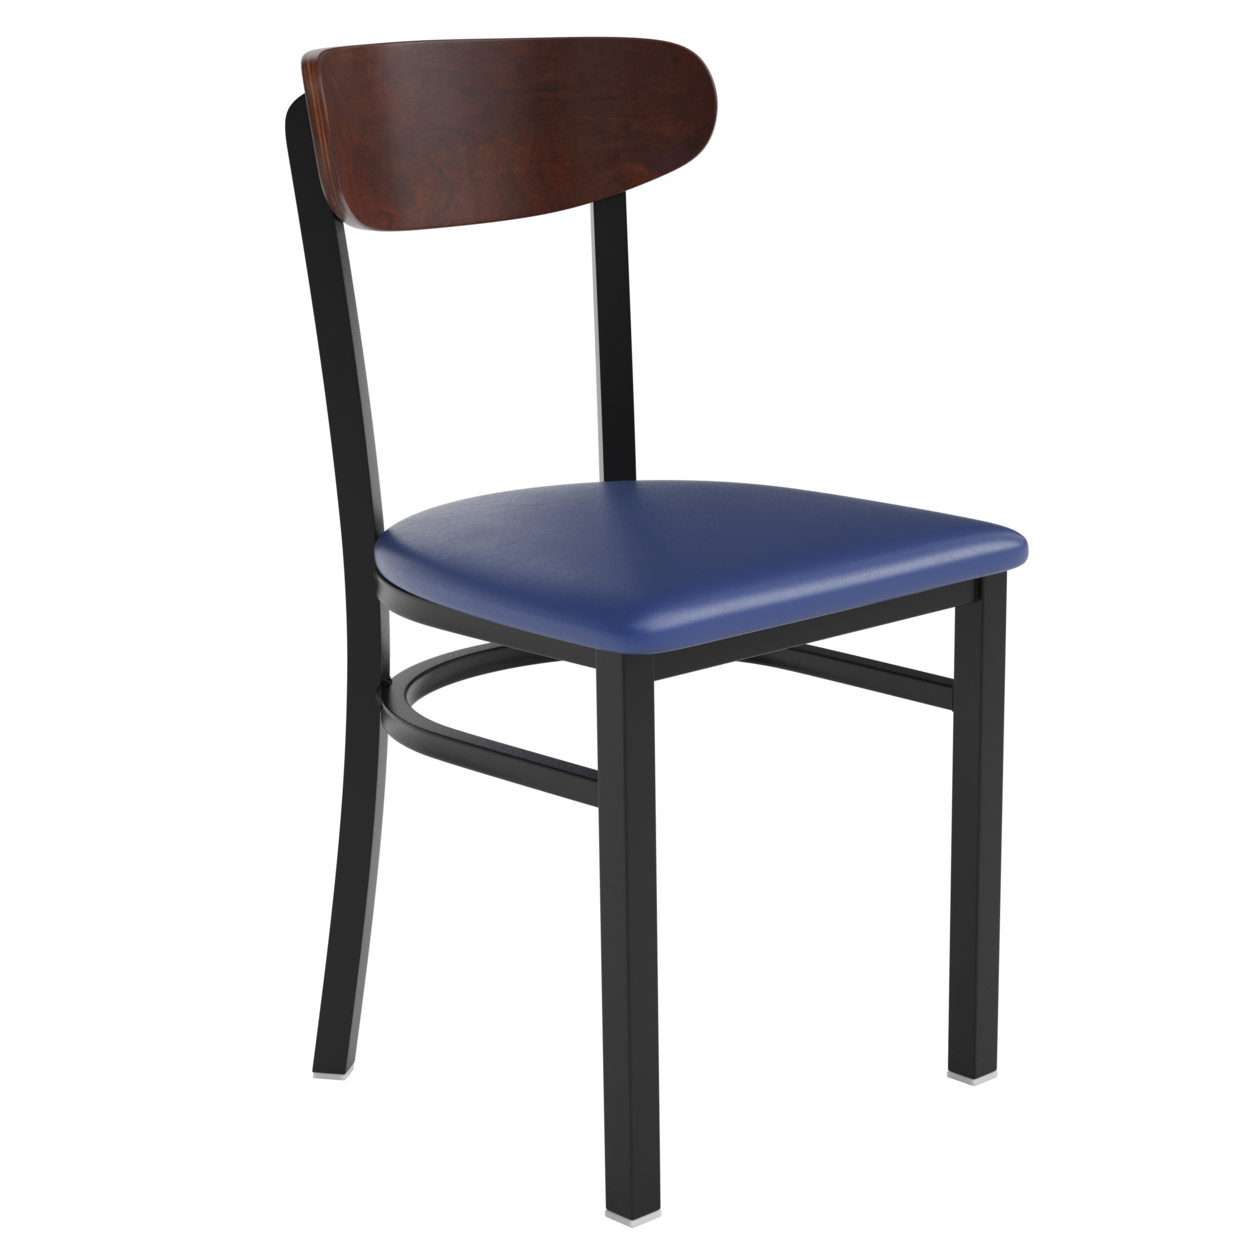 Dining Chair, Brown Wood Boomerang Back, Black Steel Frame, Blue Vinyl Seat